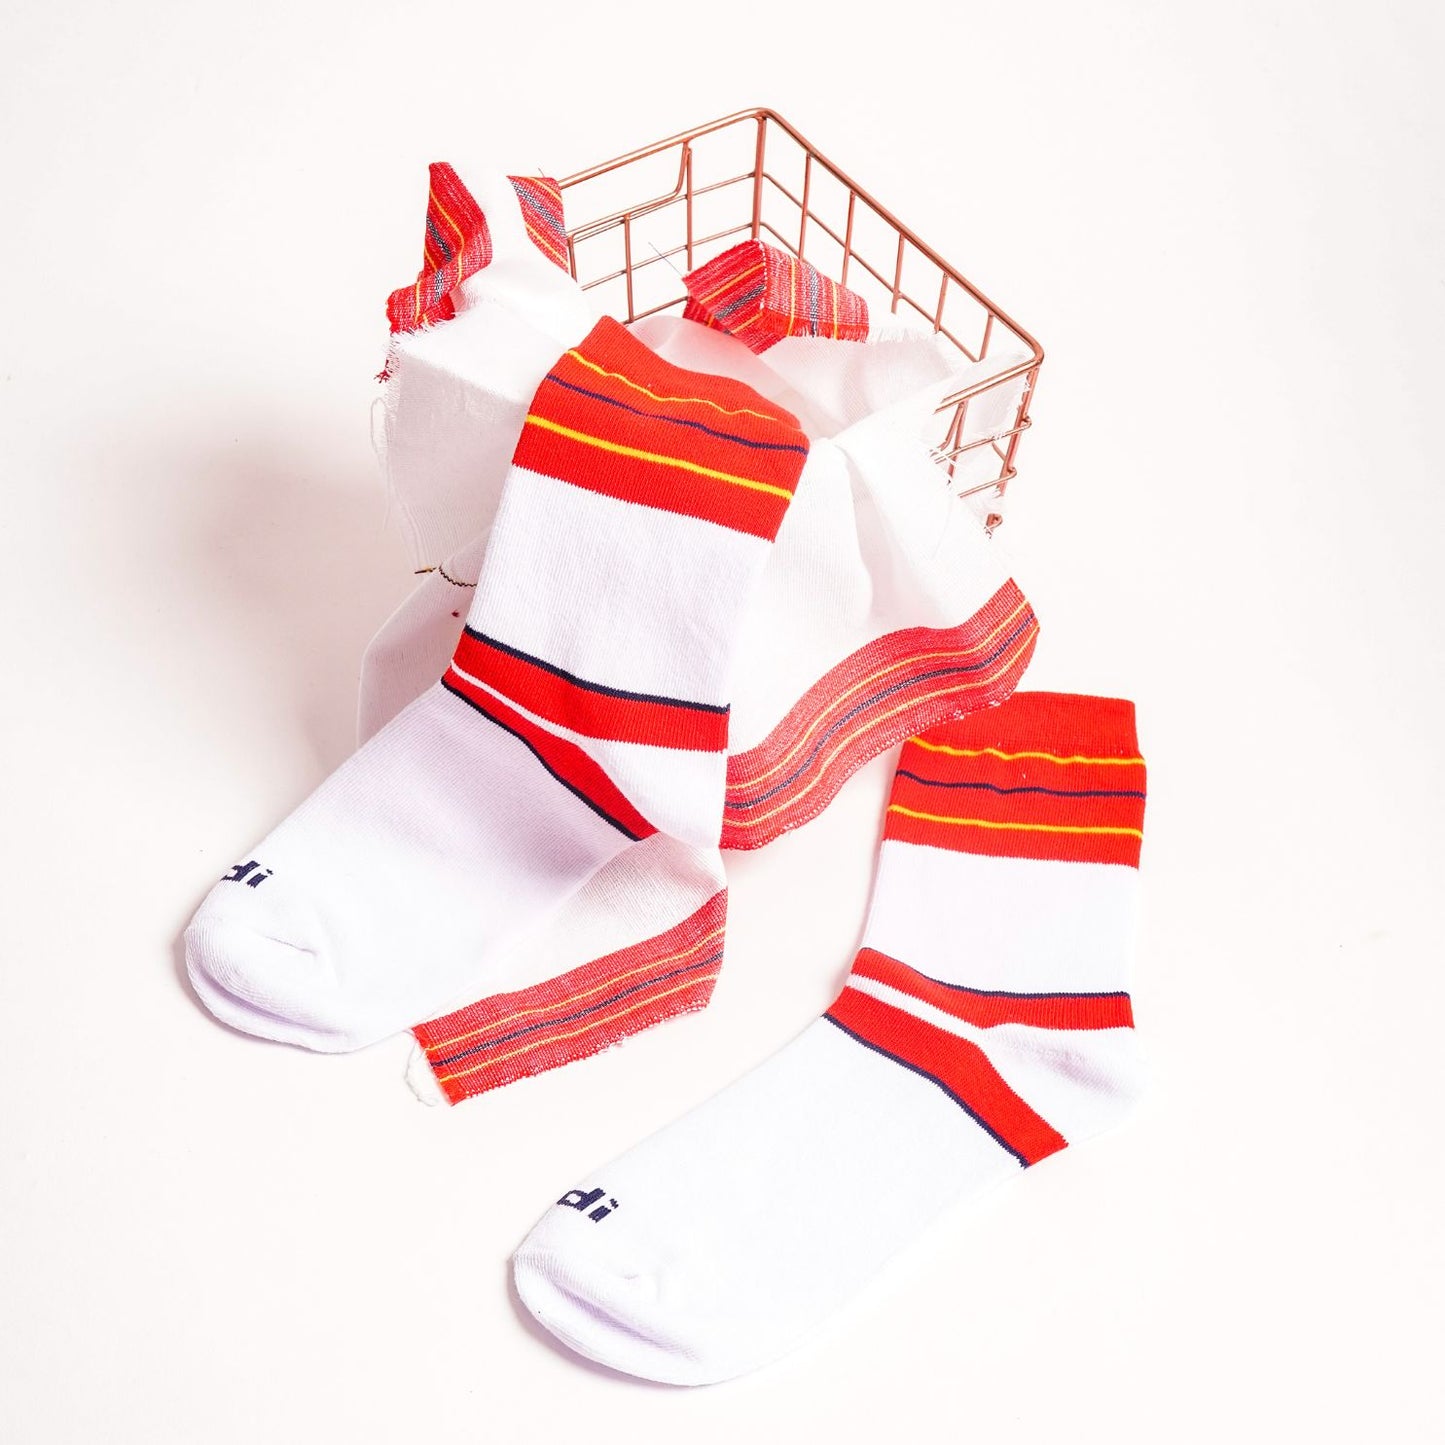 Piningitan - INDI Heritage Socks (Adult)